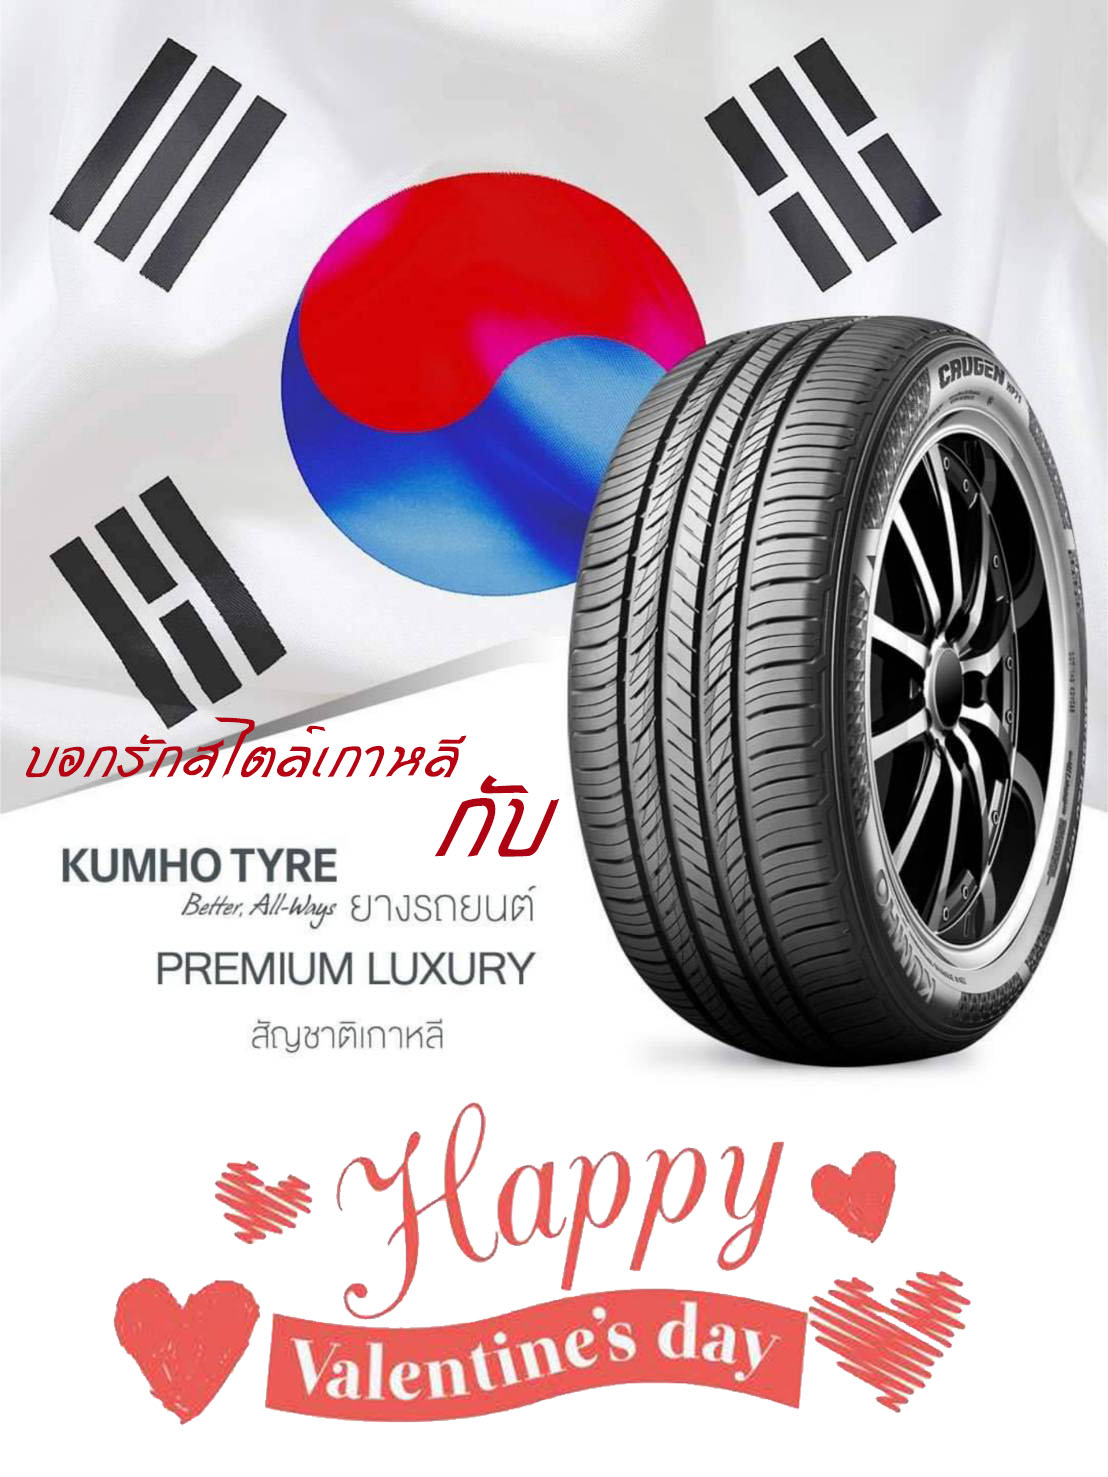 Happy Valentine'day 14 Feb.
 บอกรักสไตล์เกาหลี กับคัมโฮ 
 มีประโยคบอกรักน่า…